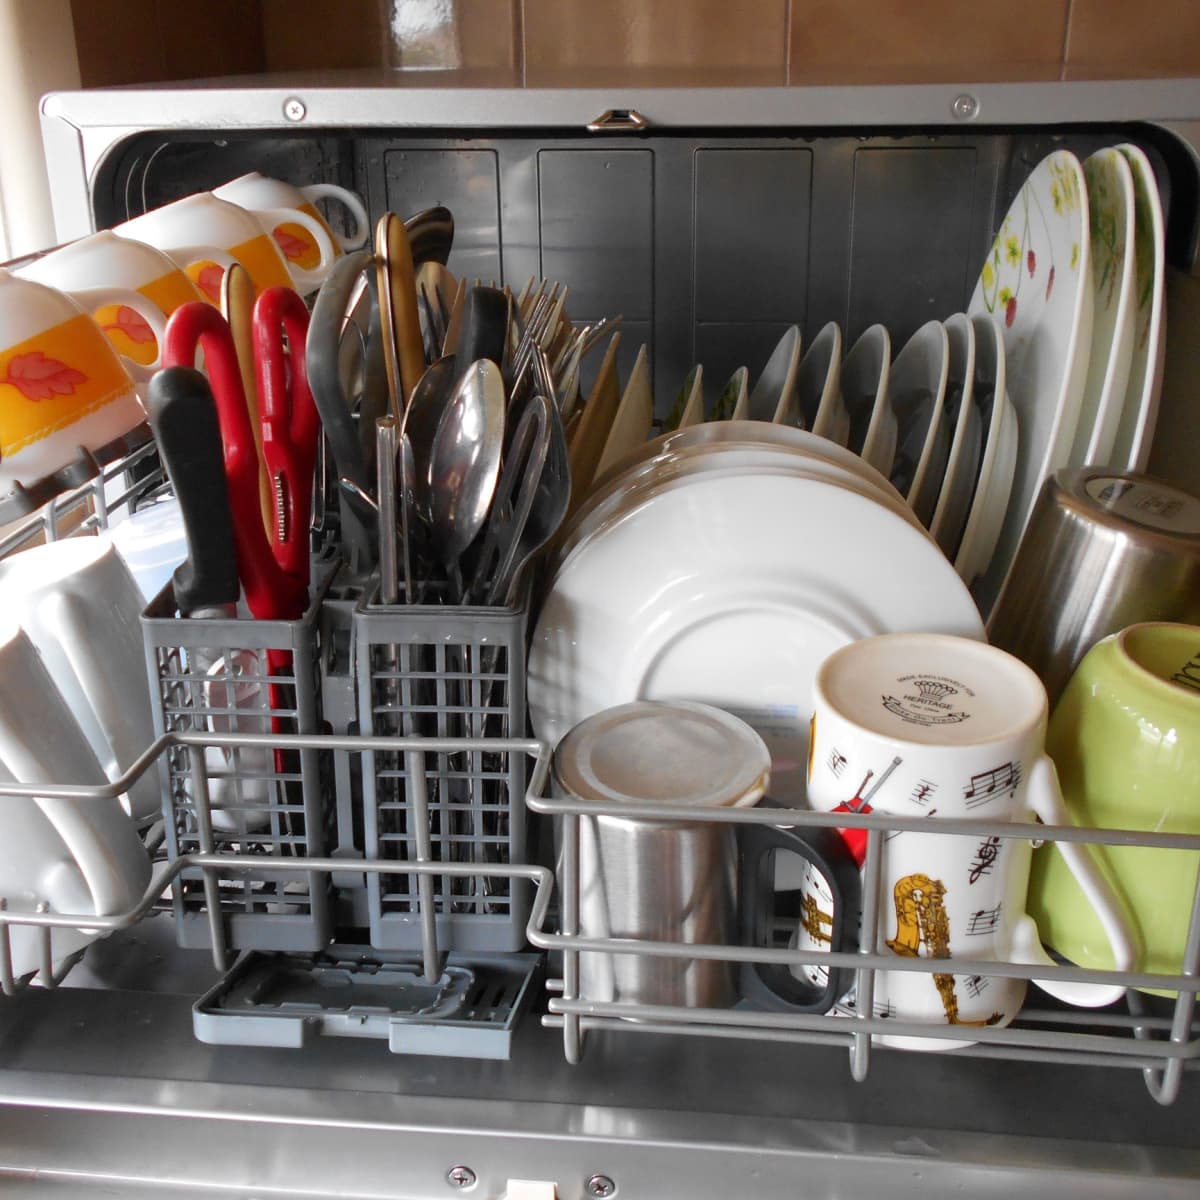 Кастрюля можно мыть в посудомоечной машине. Посуда в посудомойке. Компактная посудомоечная машина кастрюли. Малогабаритная посудомойка для какастрюль. Посудомойка для кастрюль и сковородок.